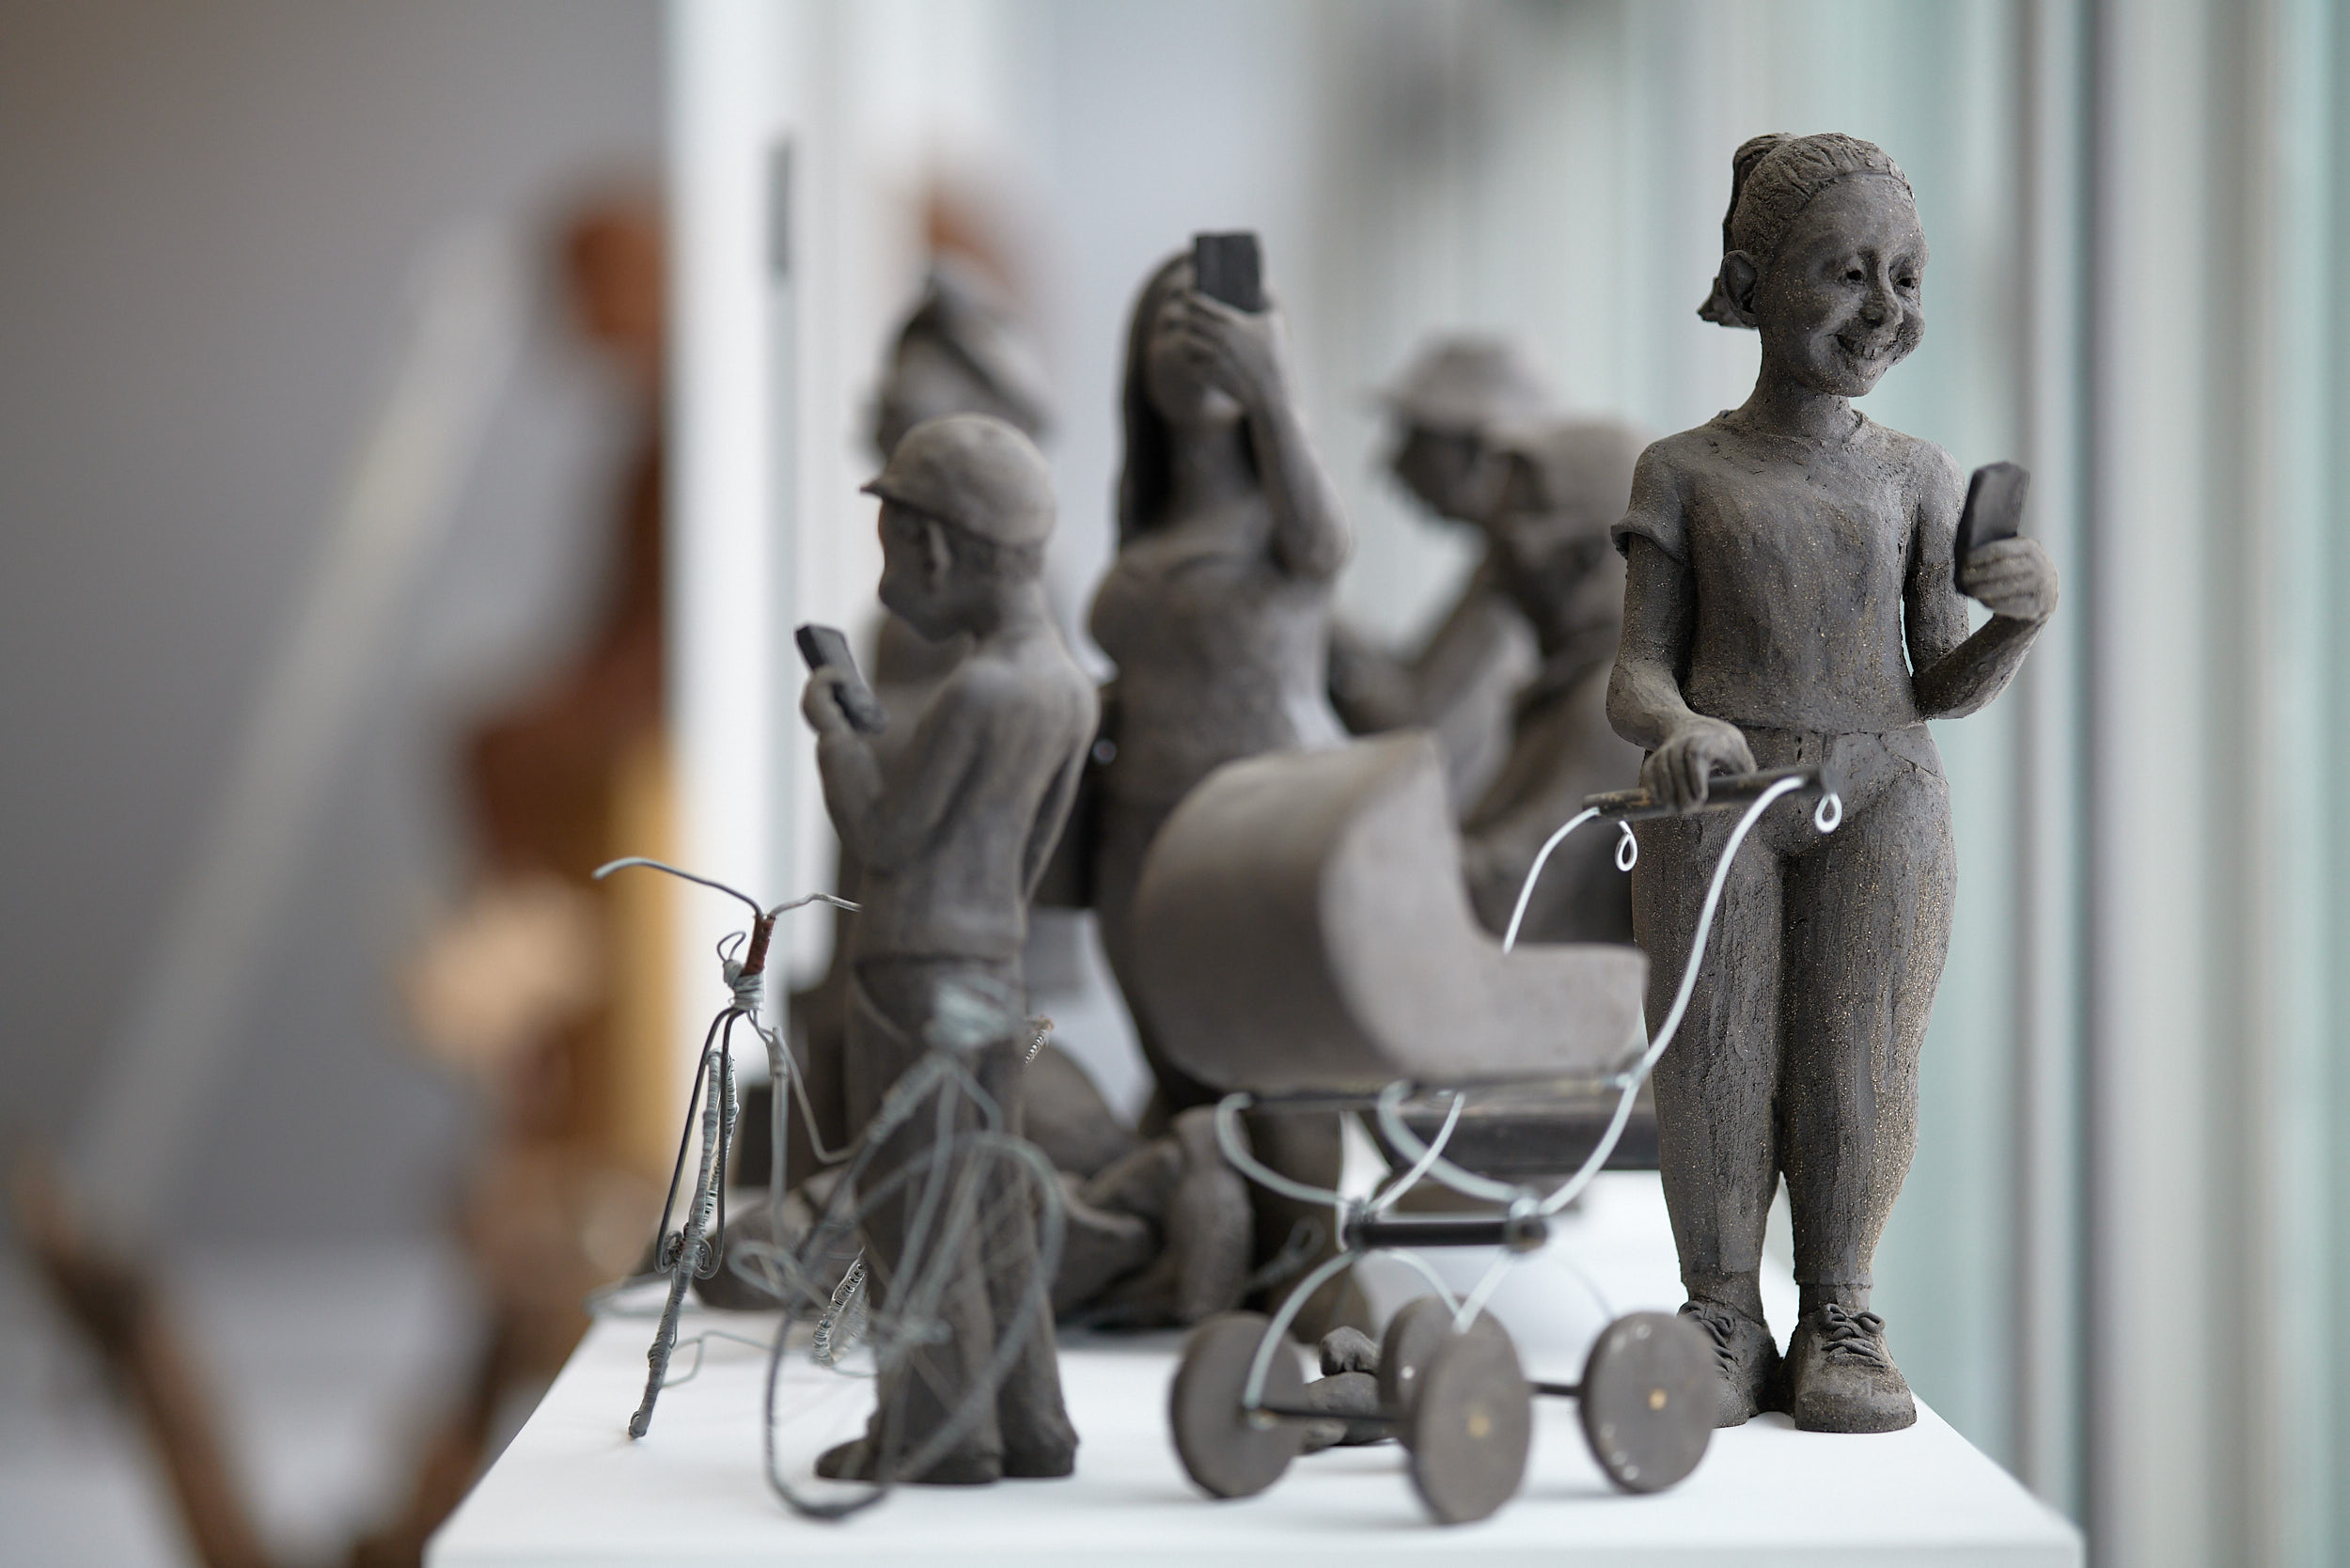 Närbild på en lerskulptur föreställande en större grupp människor. I förgrunden syns en barn vid en cykel och en kvinna vid en barnvagn. Båda tittar i sina mobiler.